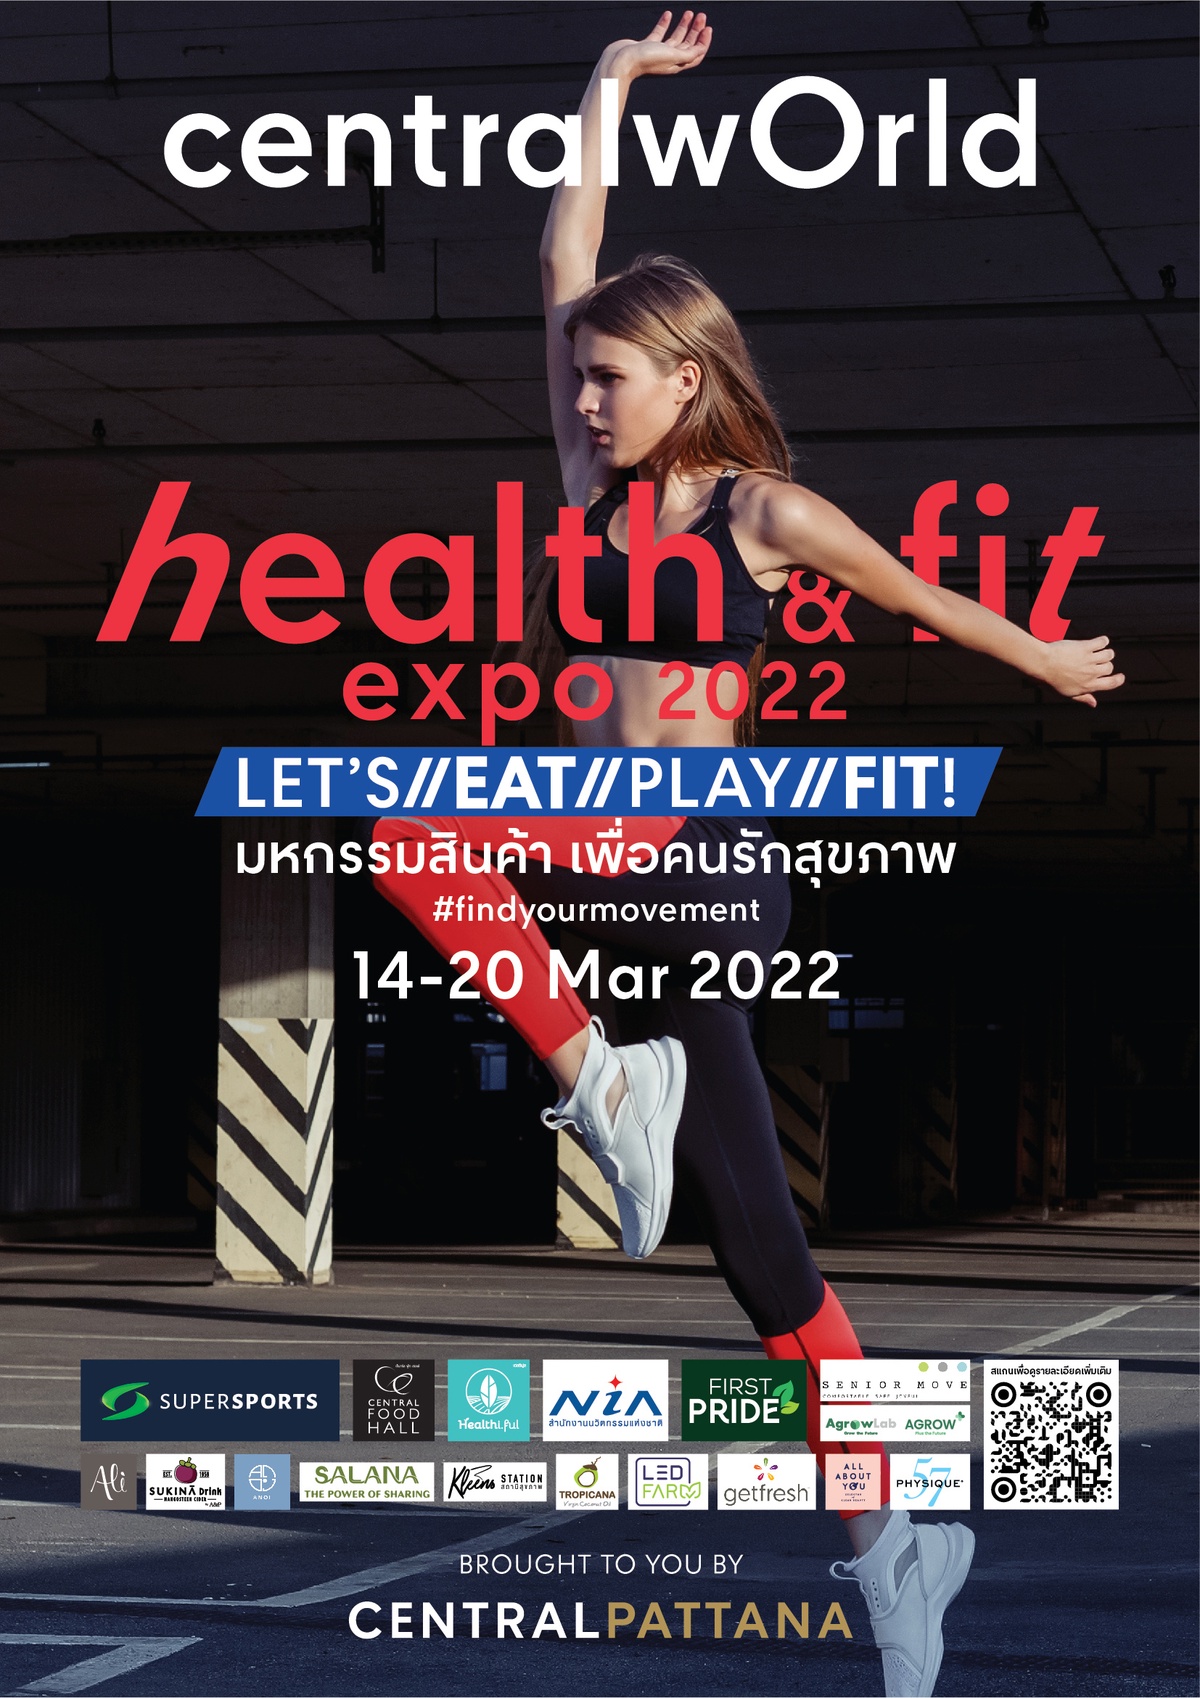 เซ็นทรัลเวิลด์ ตอกย้ำ Sport destination ตัวจริง ชวนสายสปอร์ต และคนรักสุขภาพ มาฟิตในงาน Health Fit Expo 2022 มหกรรมเพื่อคนรักสุขภาพแบบครบวงจรสุดยิ่งใหญ่แห่งปีงานเดียวครบ Eat / Play / Fit